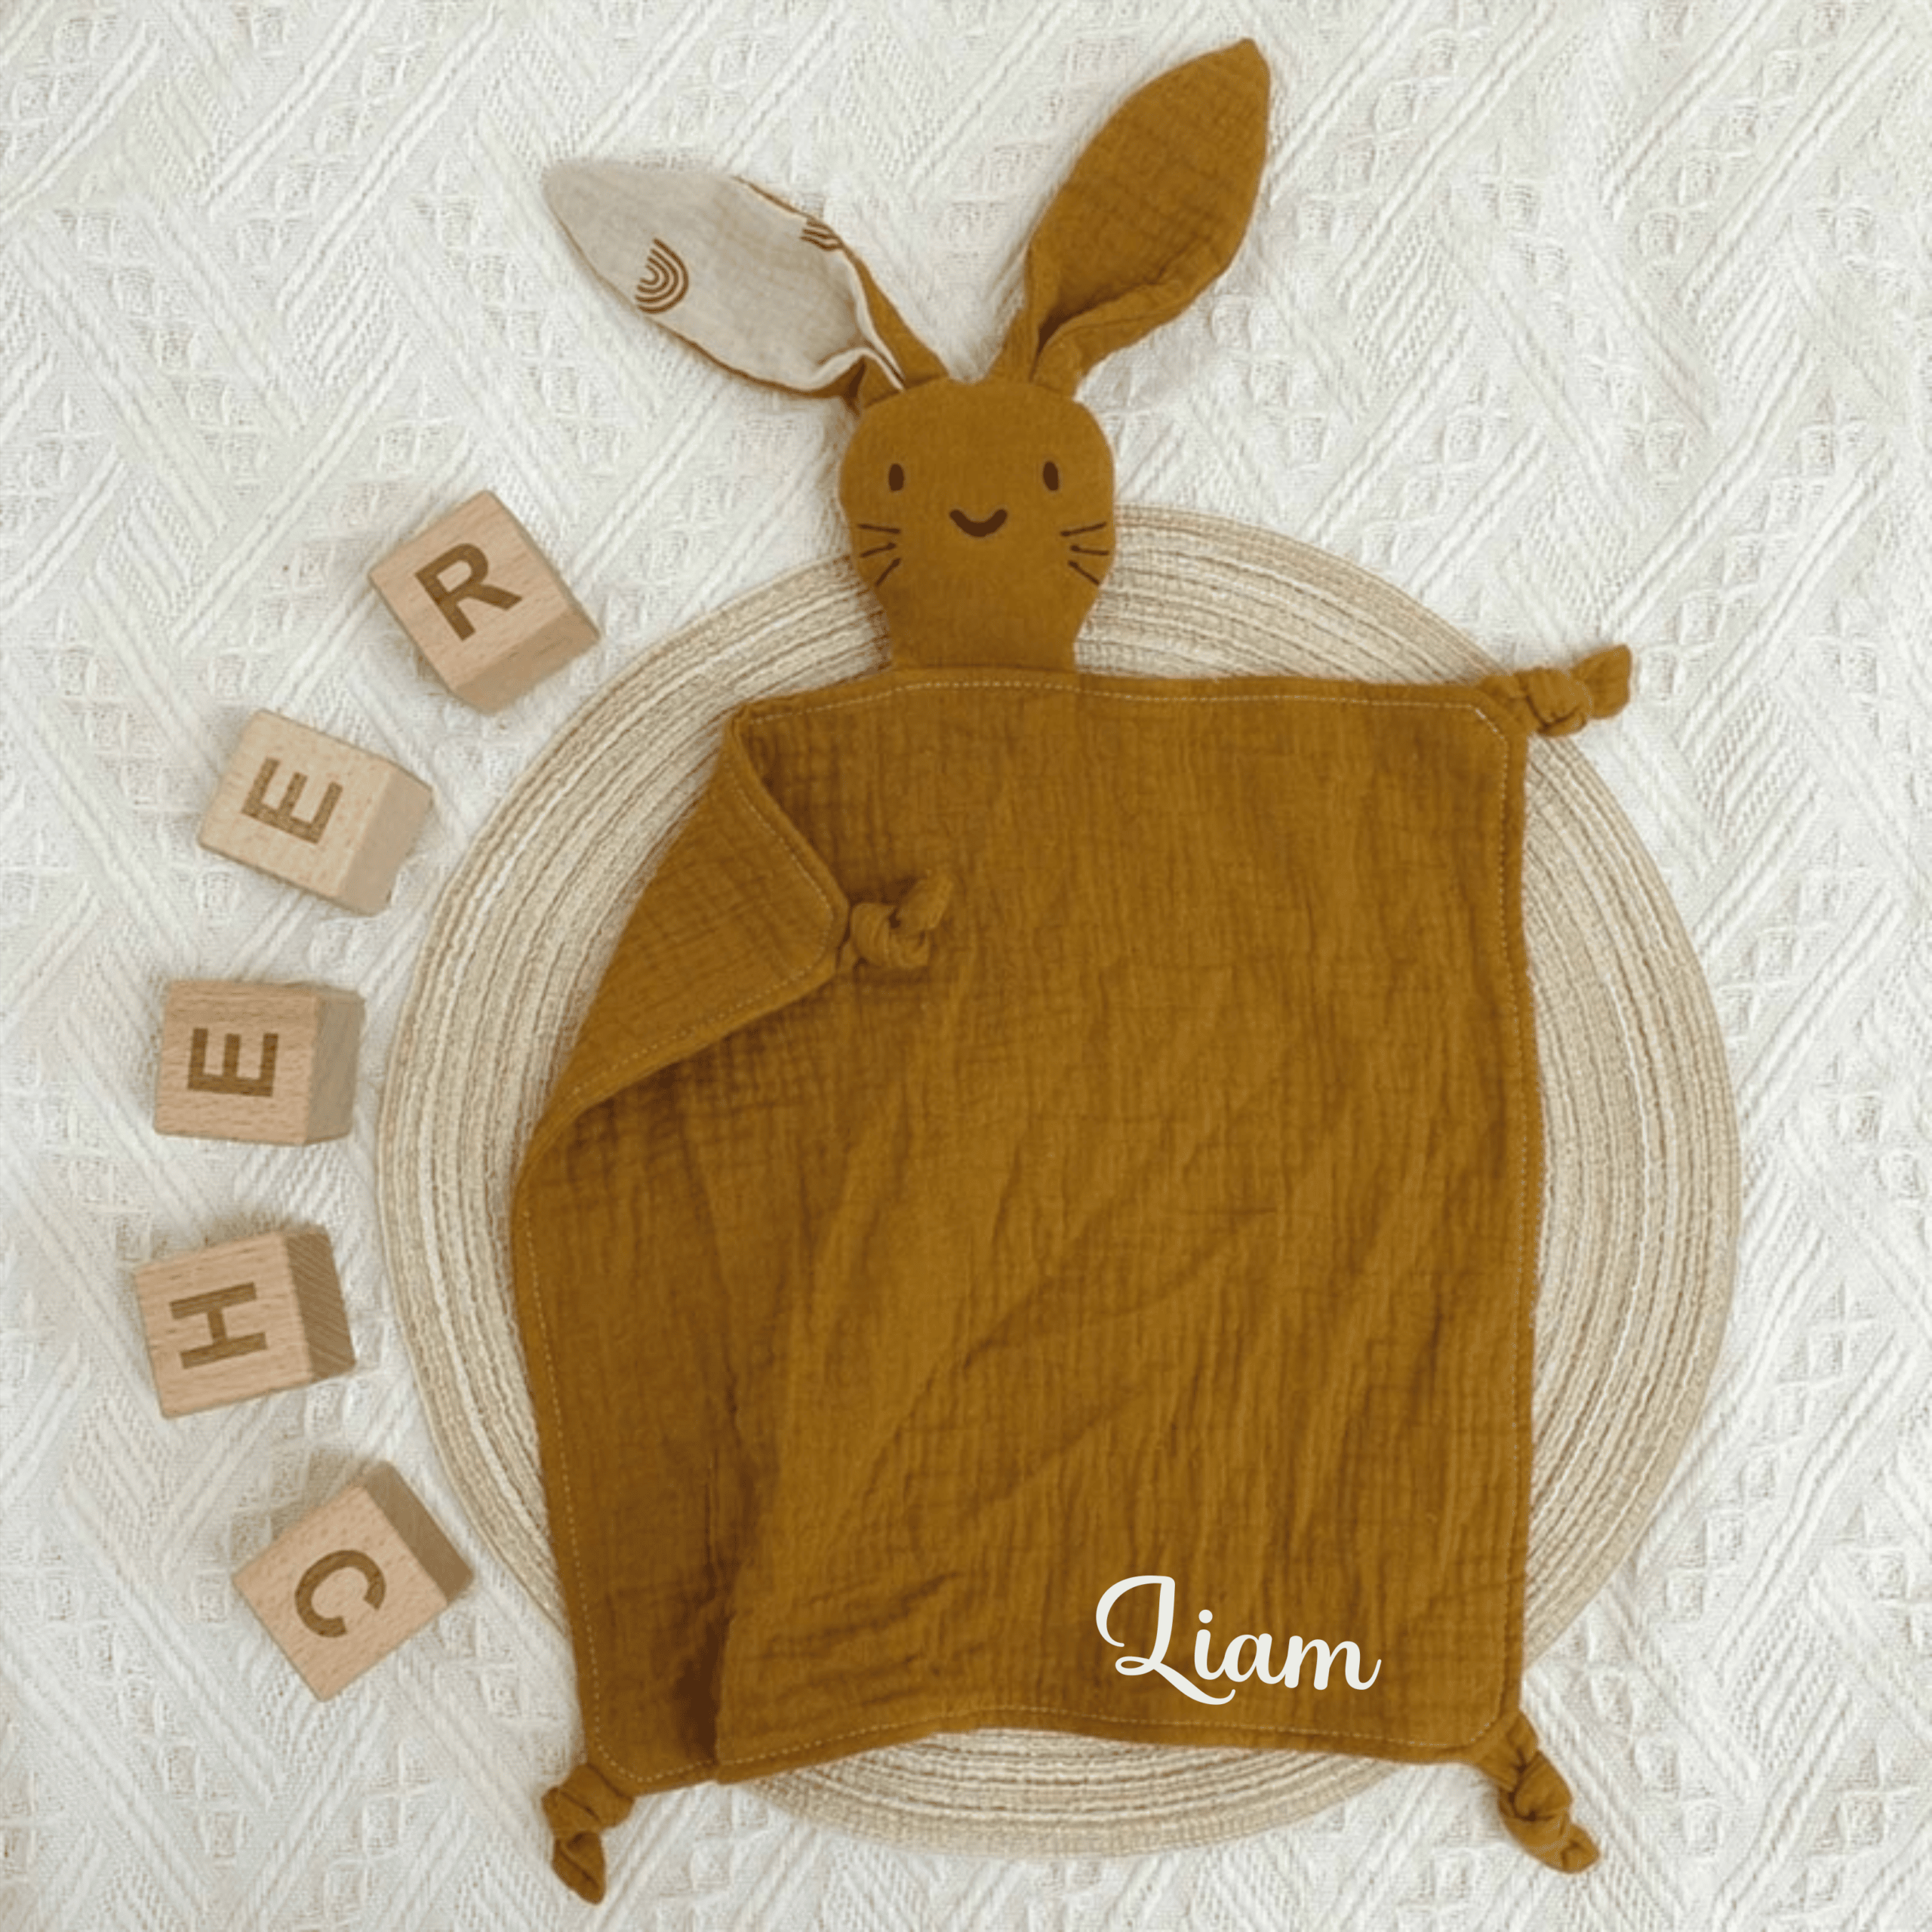 Doudou lange lapin personnalisé en gaze de coton à motif - Cadeau de  naissance en gaze de coton - Doudou personnalisé